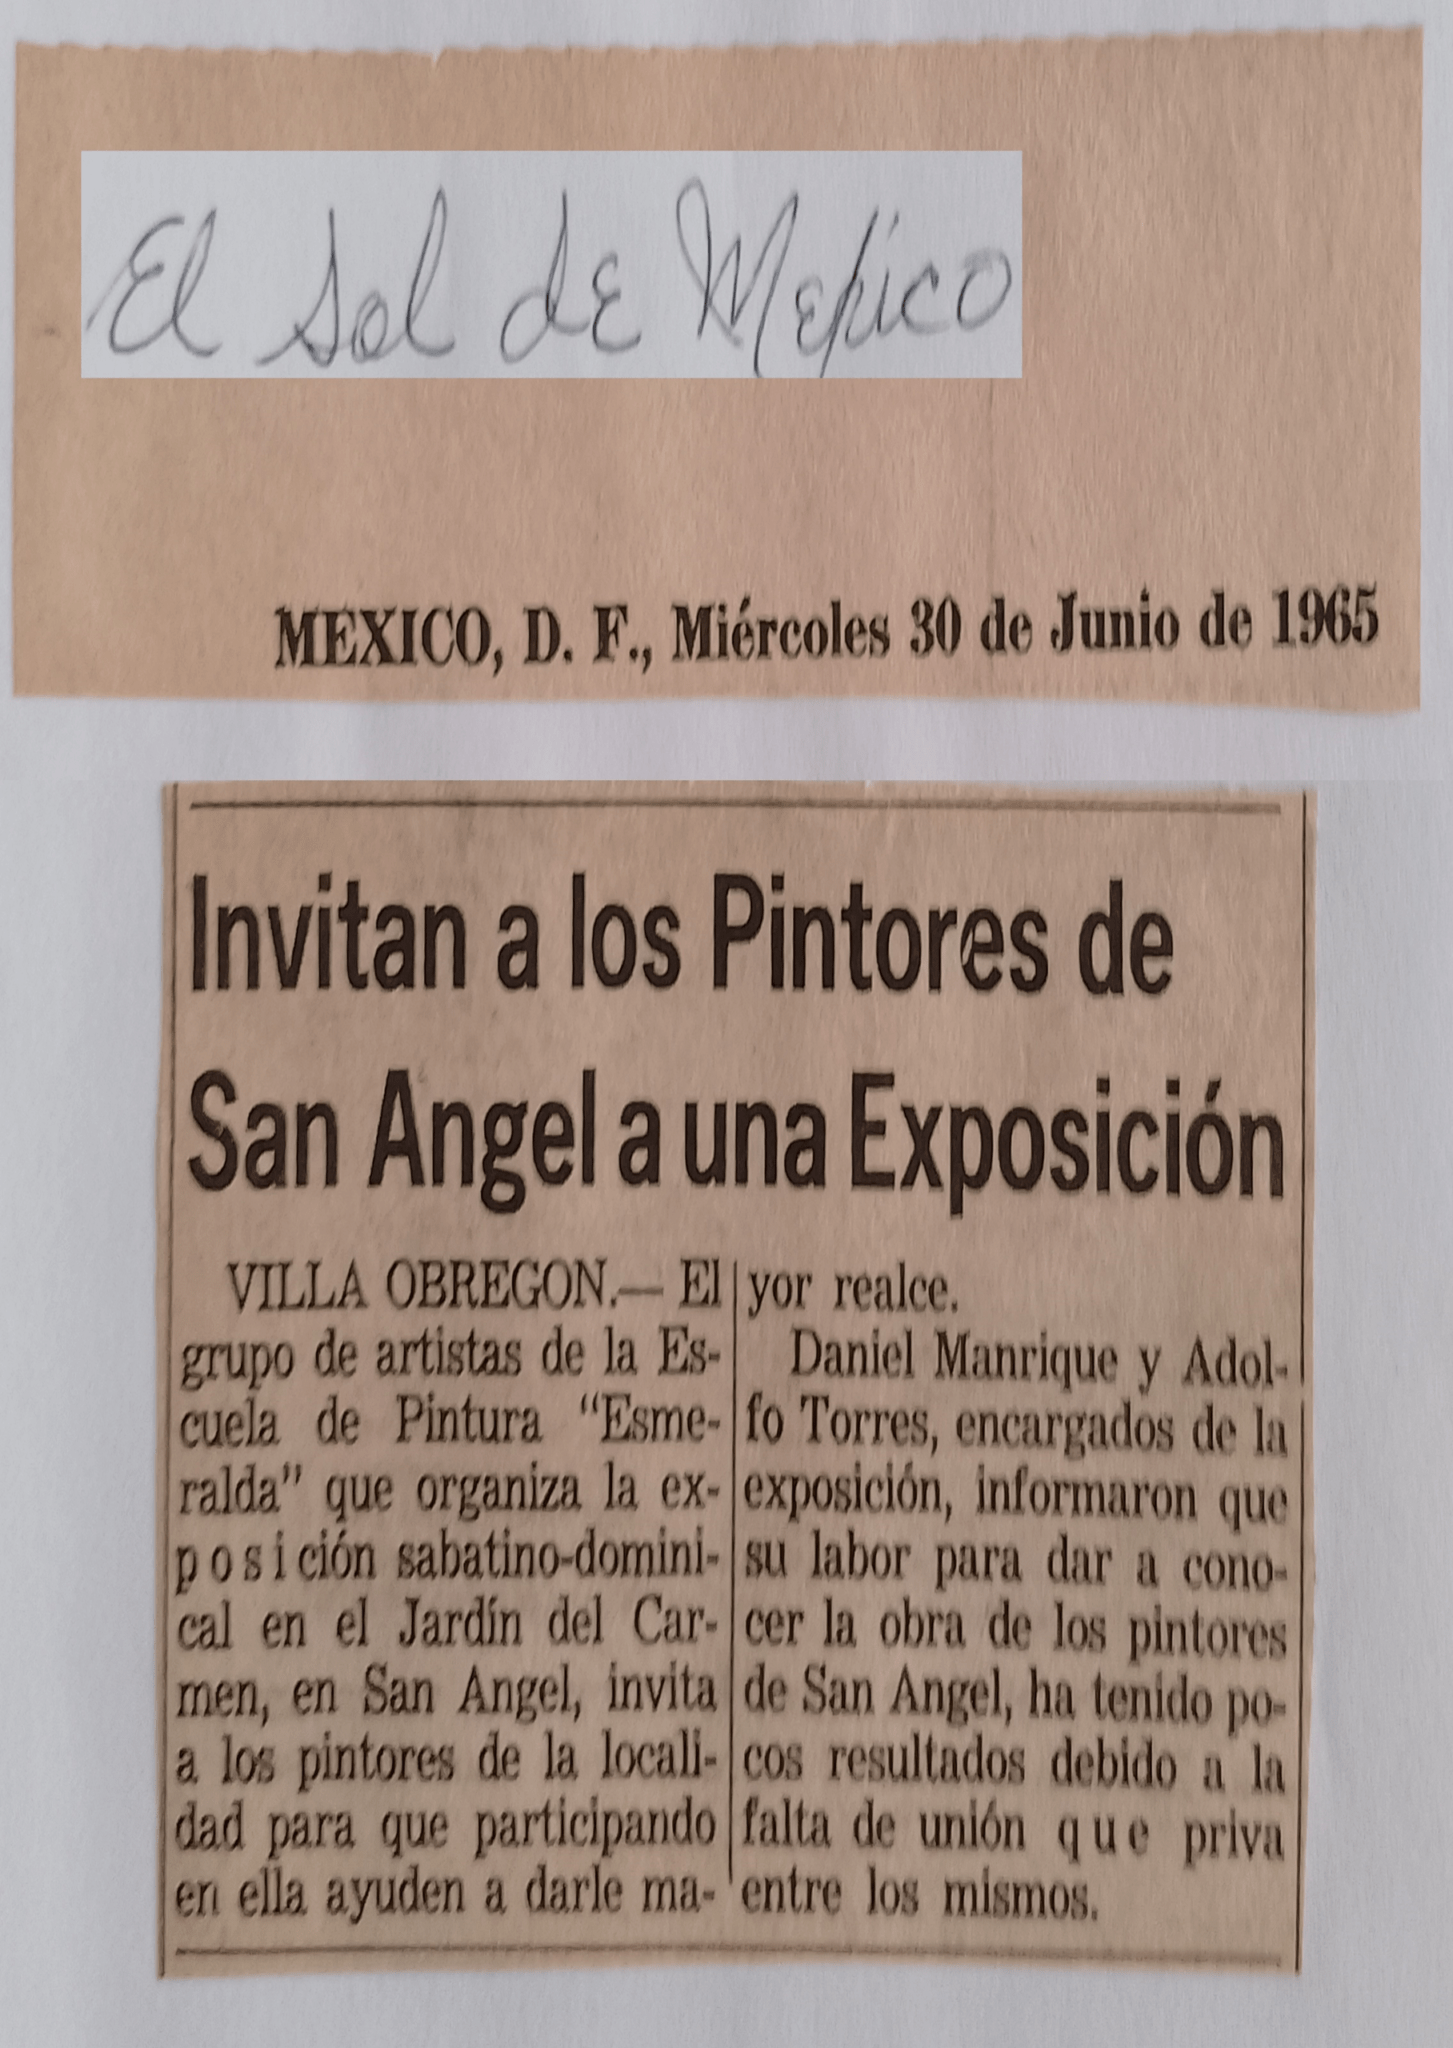 1965 Junio 30 el sol de mexico Expo San Angel (2)